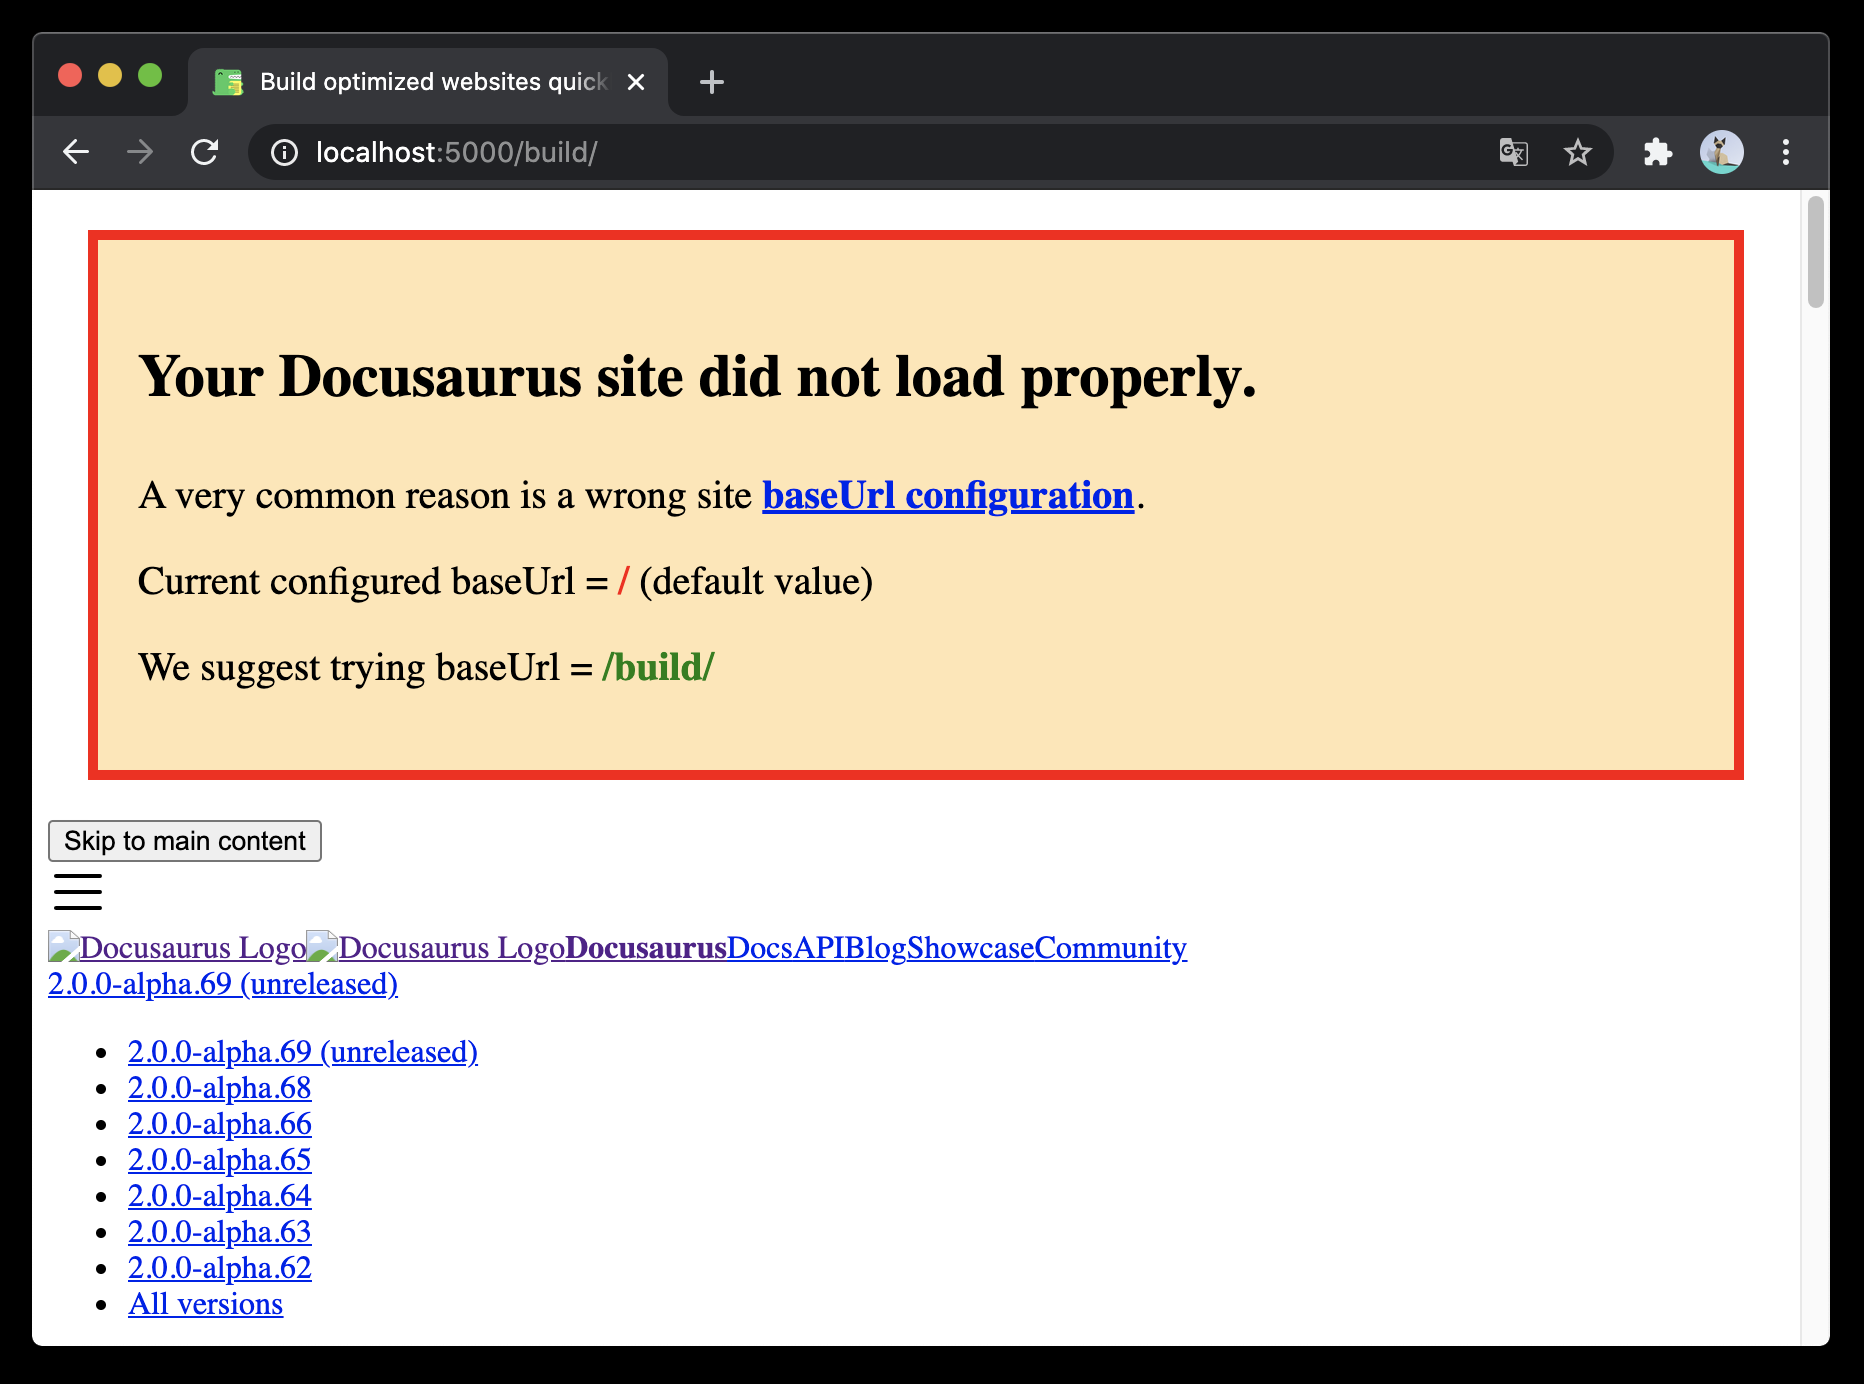 一个 base URL issue 横幅。 样式非常粗糙，因为样式表加载失败了。 横幅的文本提示 &quot;Your Docusaurus site did not load properly... Current configured baseUrl = / (default value); We suggest trying baseUrl = /build/